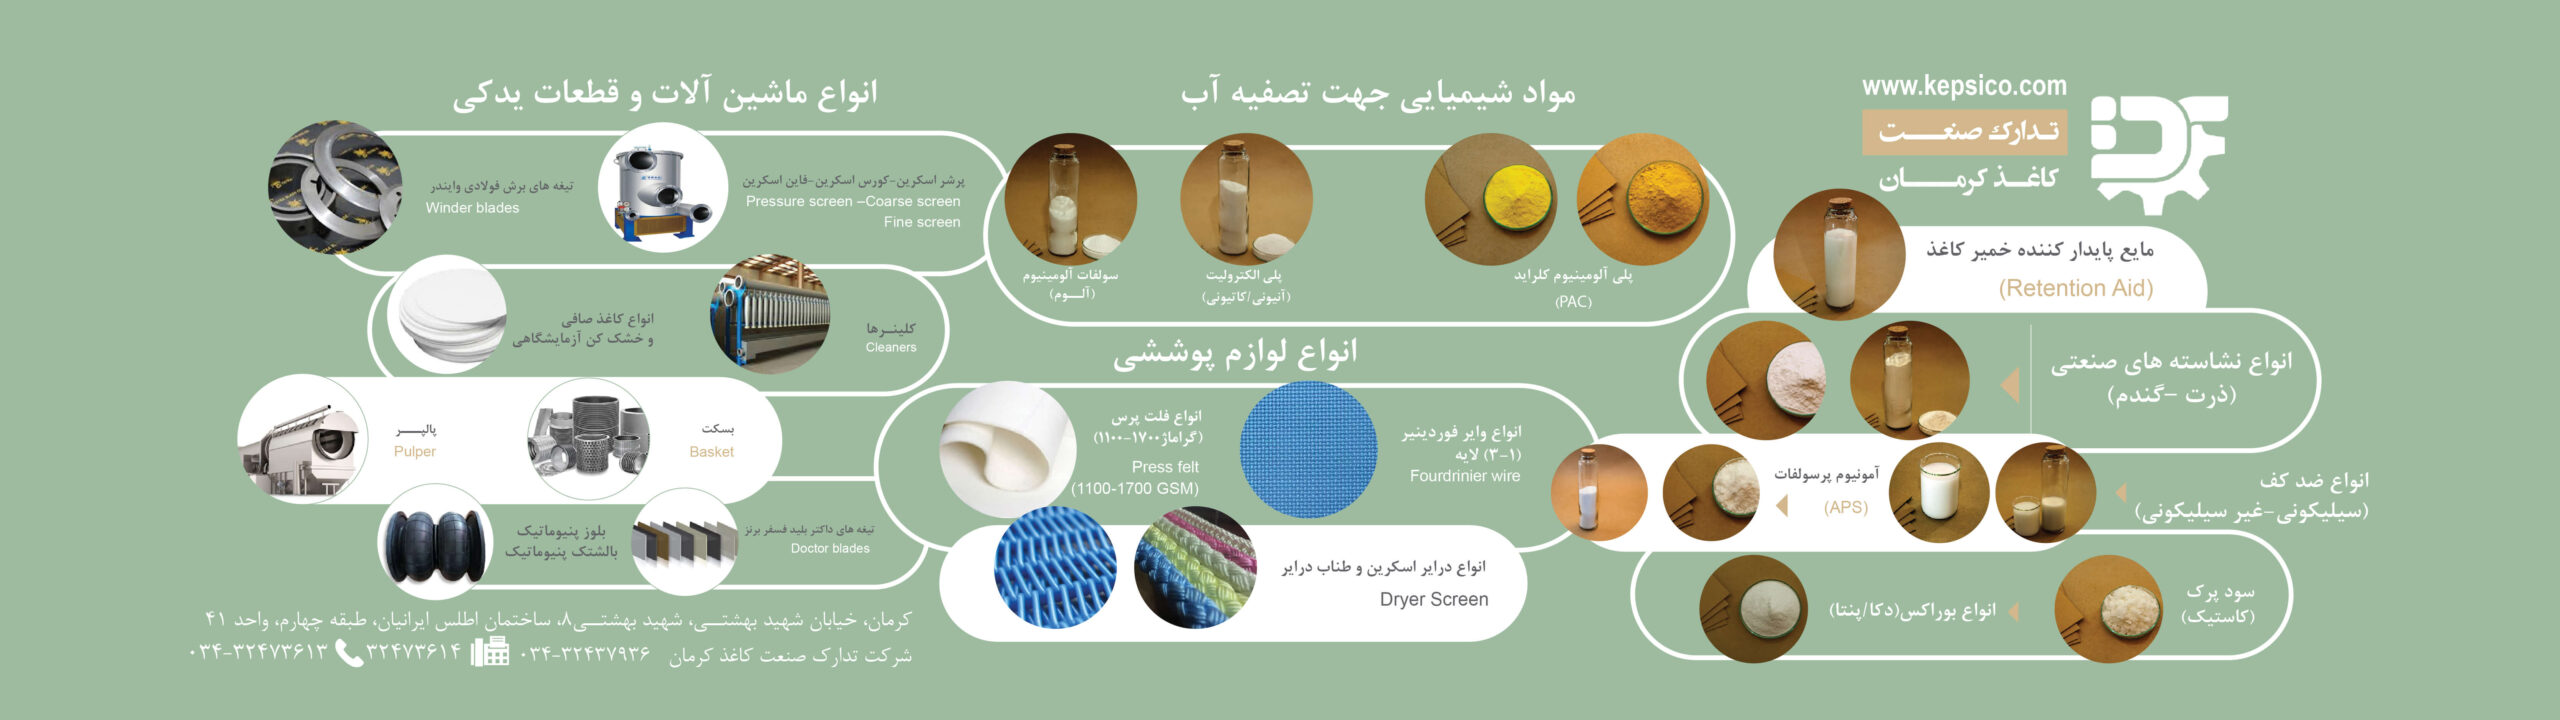 بنر معرفی محصولات و خدمات تدارک صنعت کاغذ کرمان